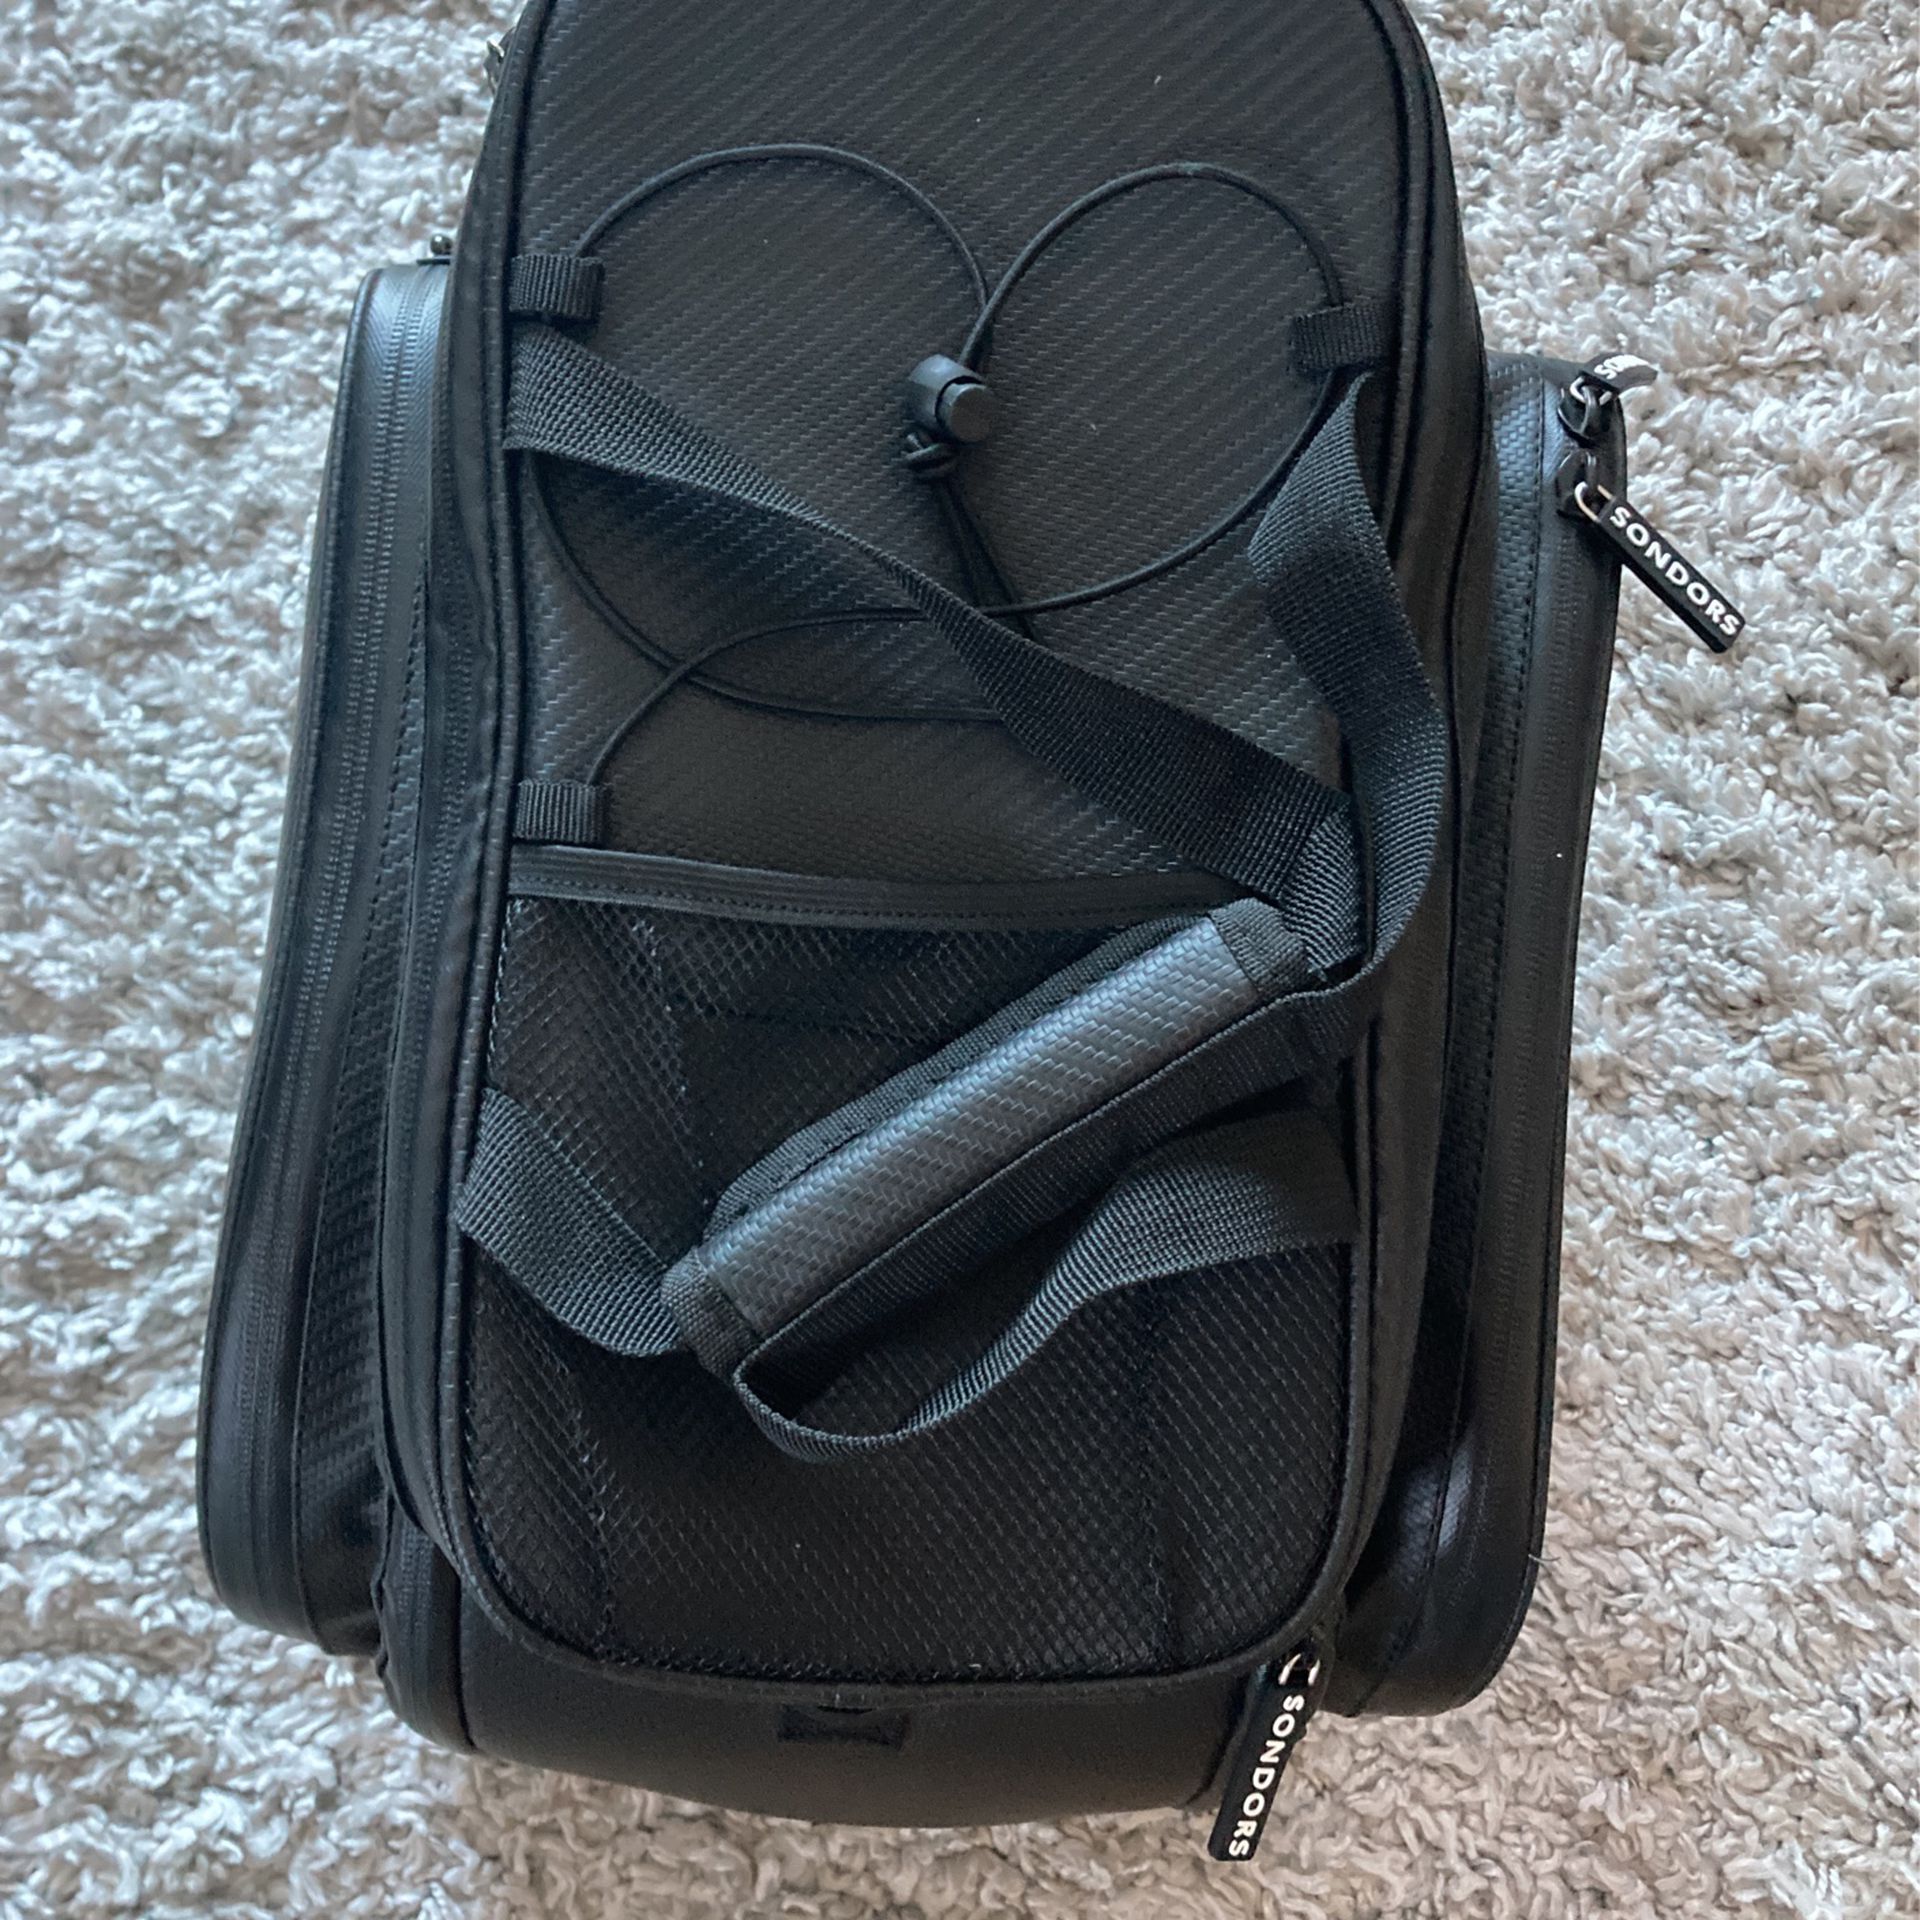 Sondors (Brand New) Rack Bag